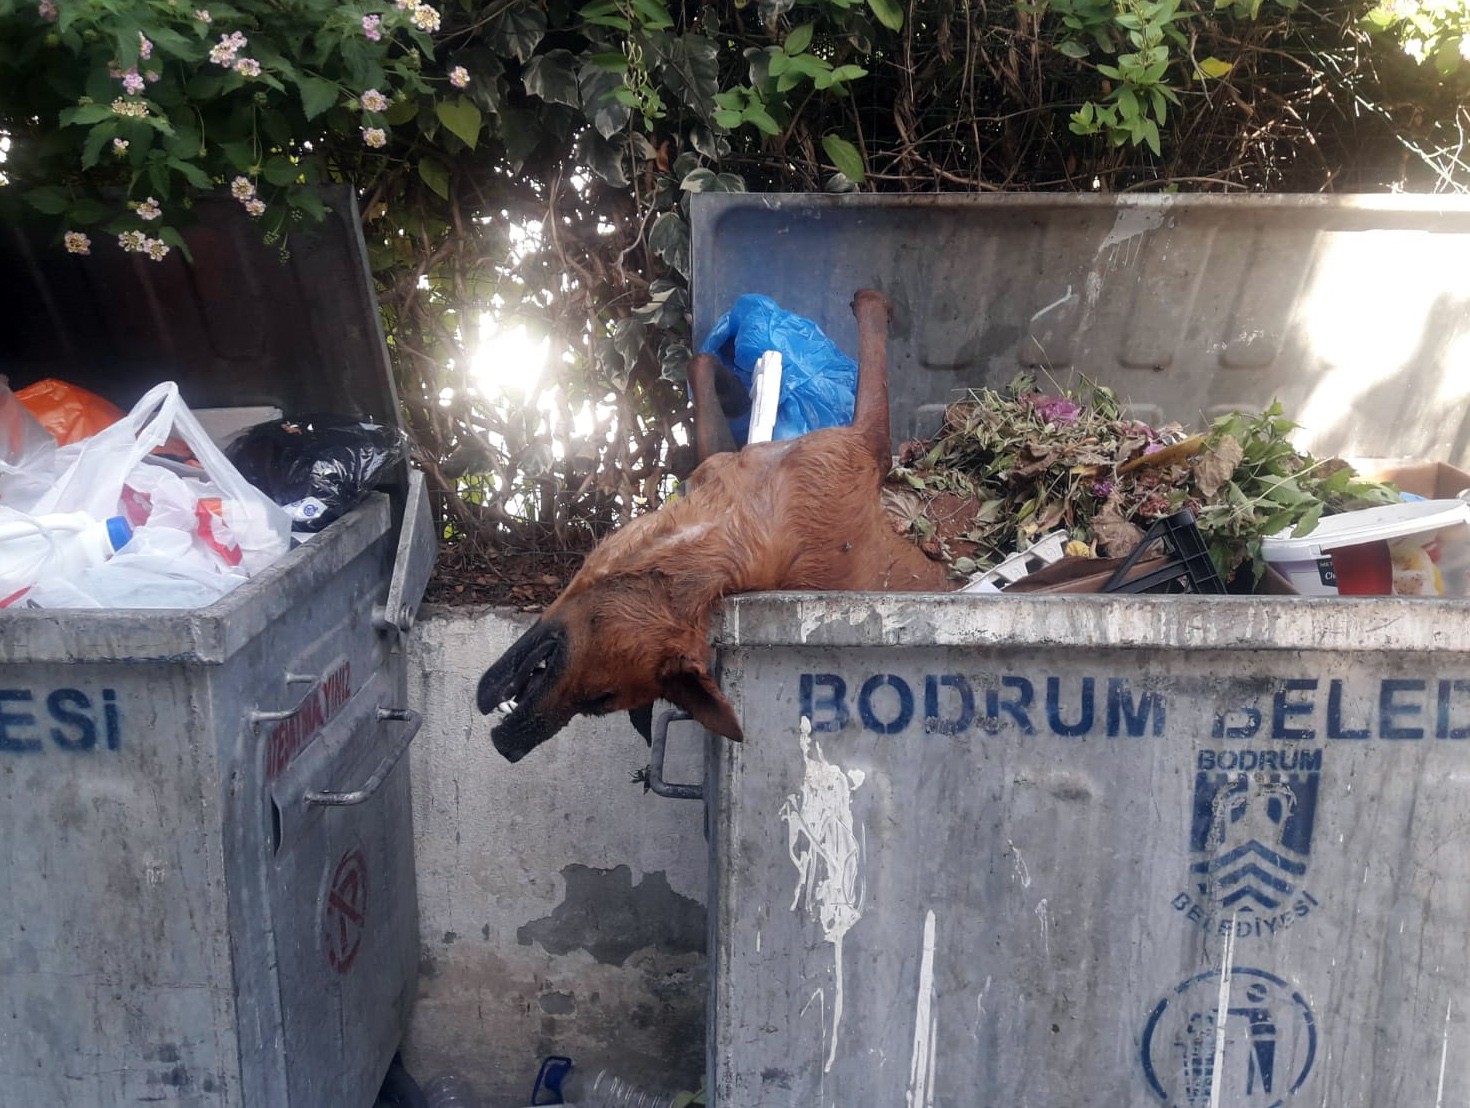 Öldürülüp çöpe atılan köpekler Bodrum’u ayağa kaldırdı haberi